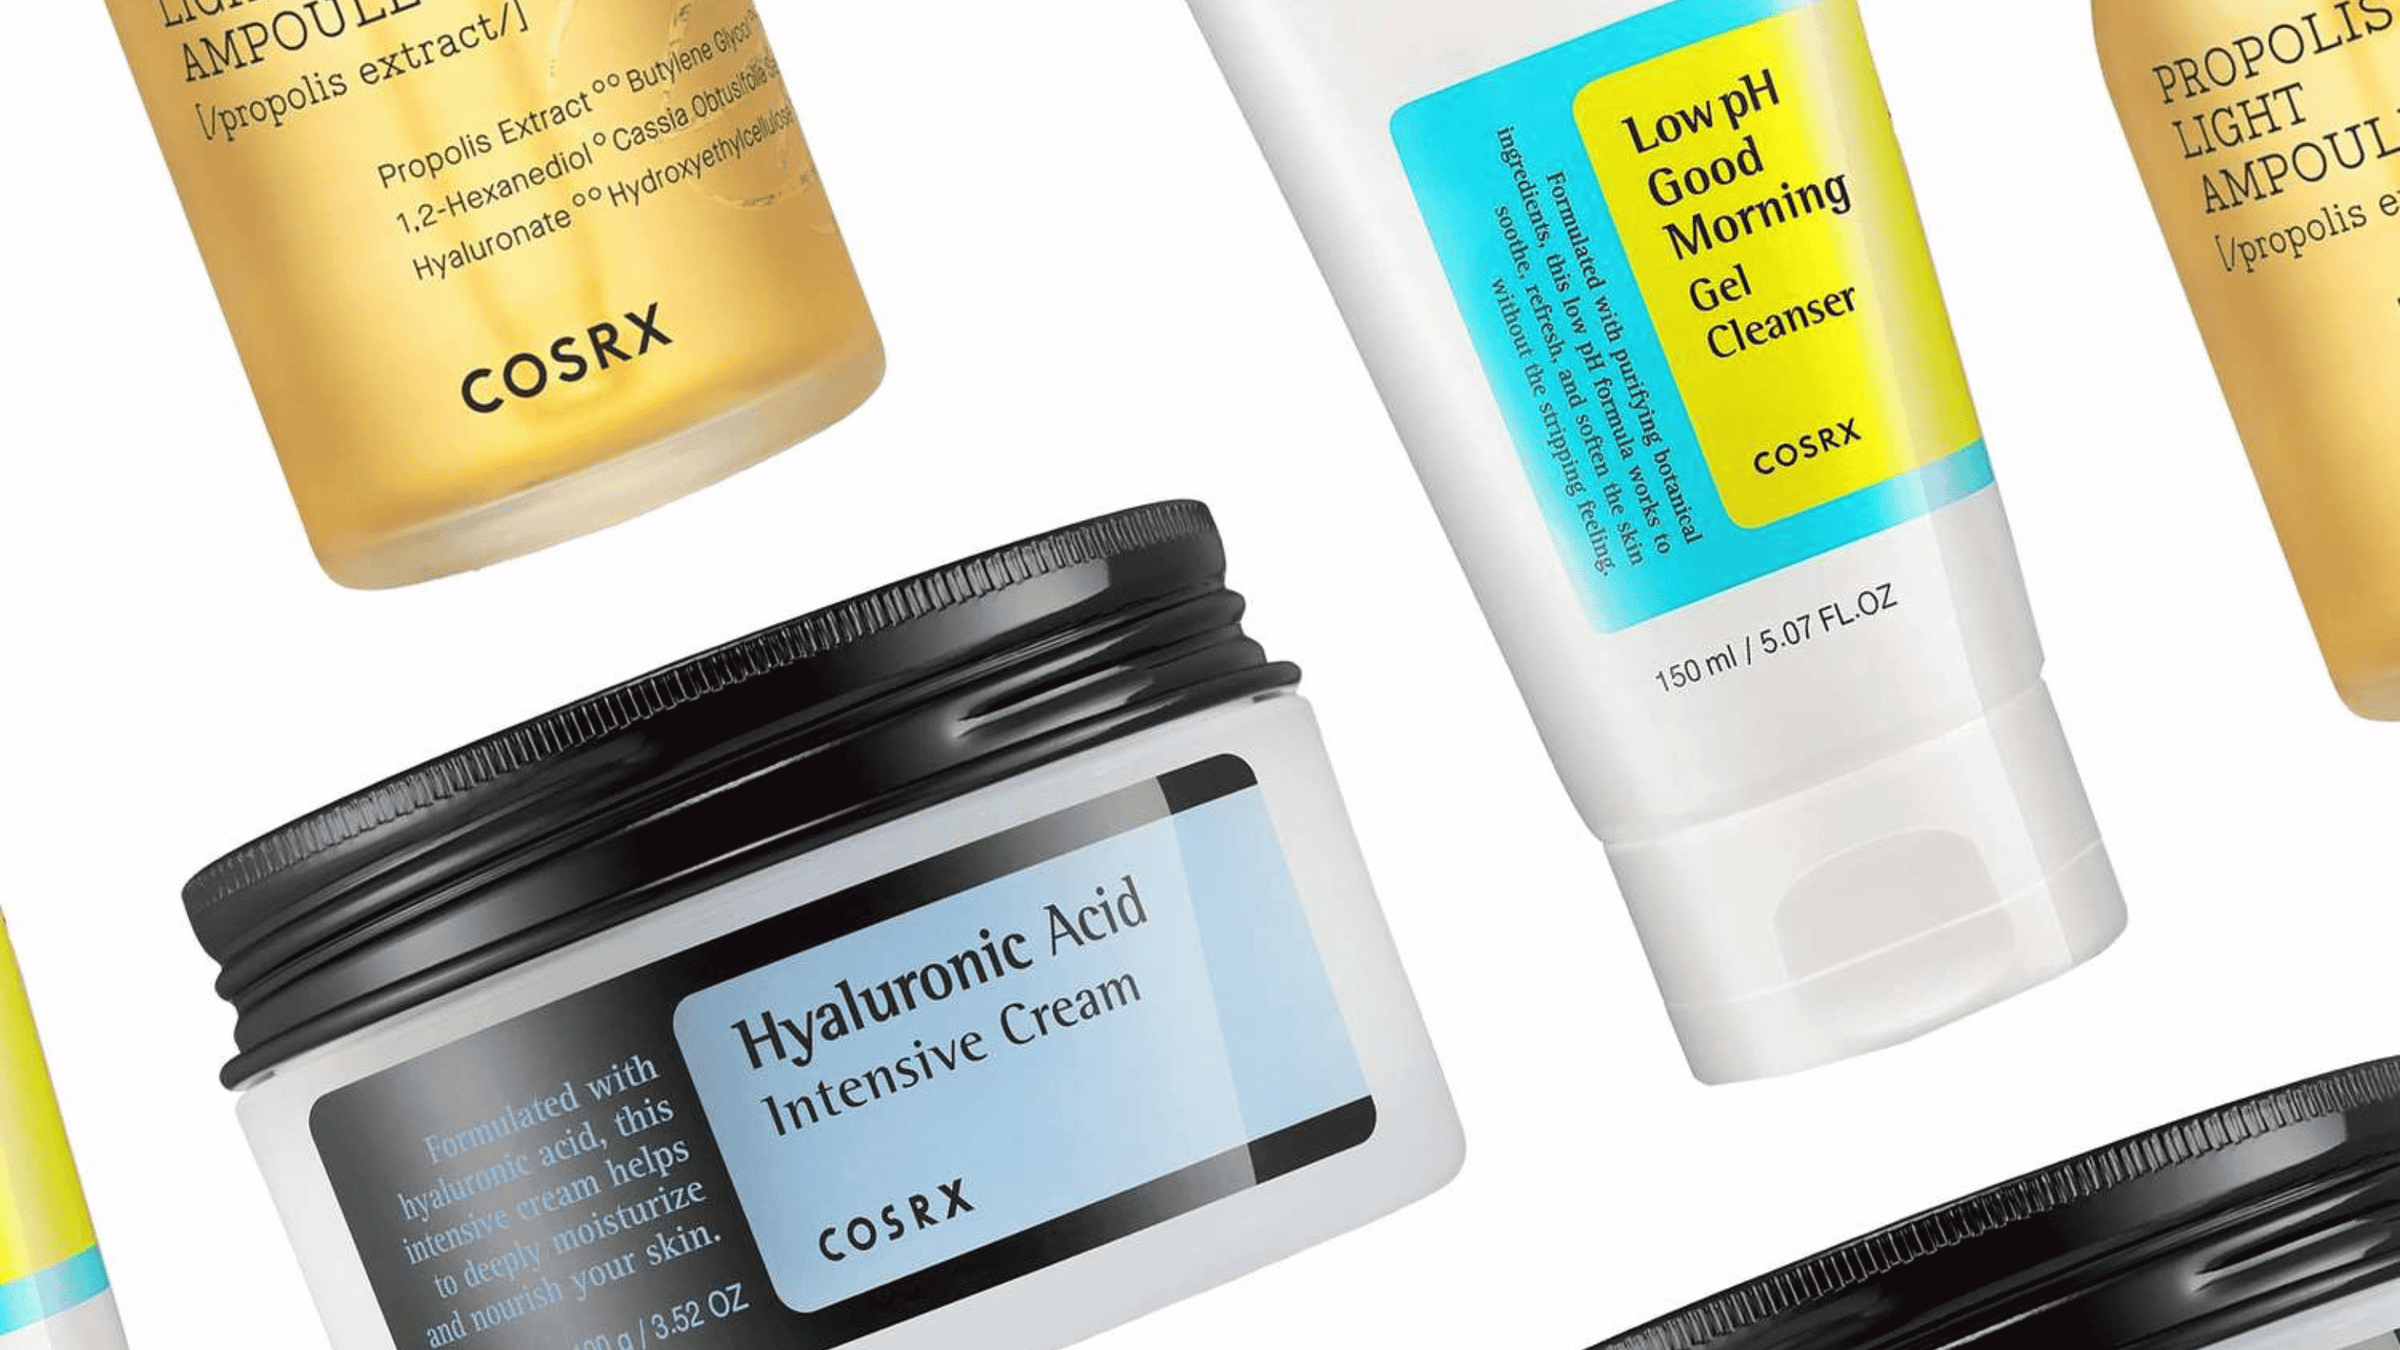 Bilden visar en samling hudvårdsprodukter från märket COSRX, kända för sina effektiva och hudvänliga produkter.